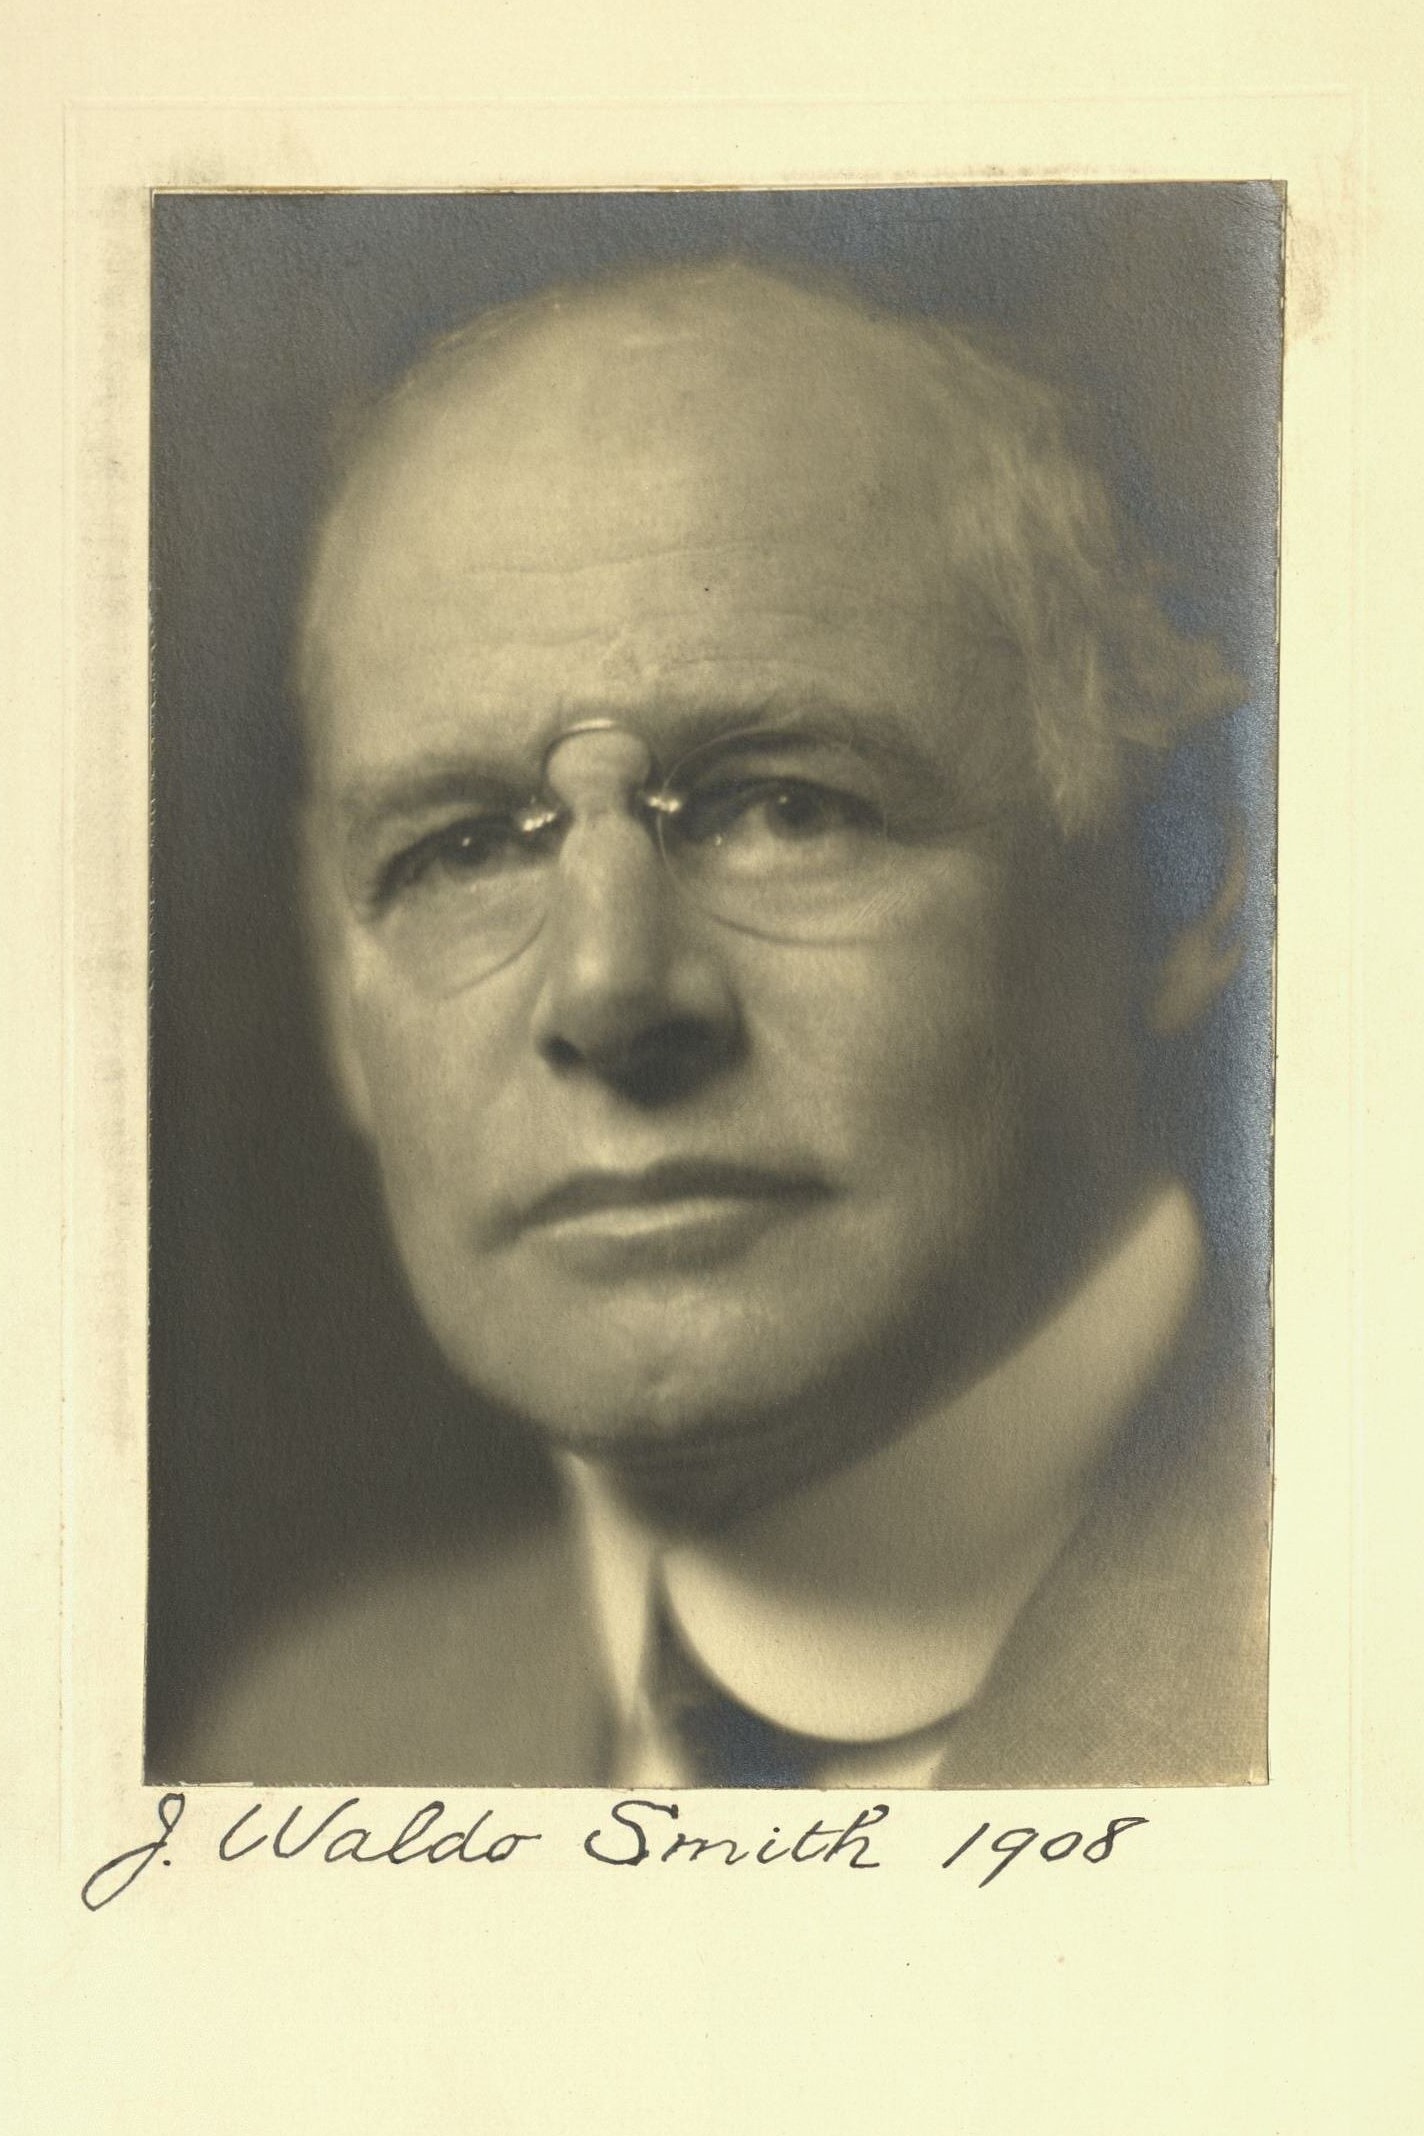 Member portrait of J. Waldo Smith